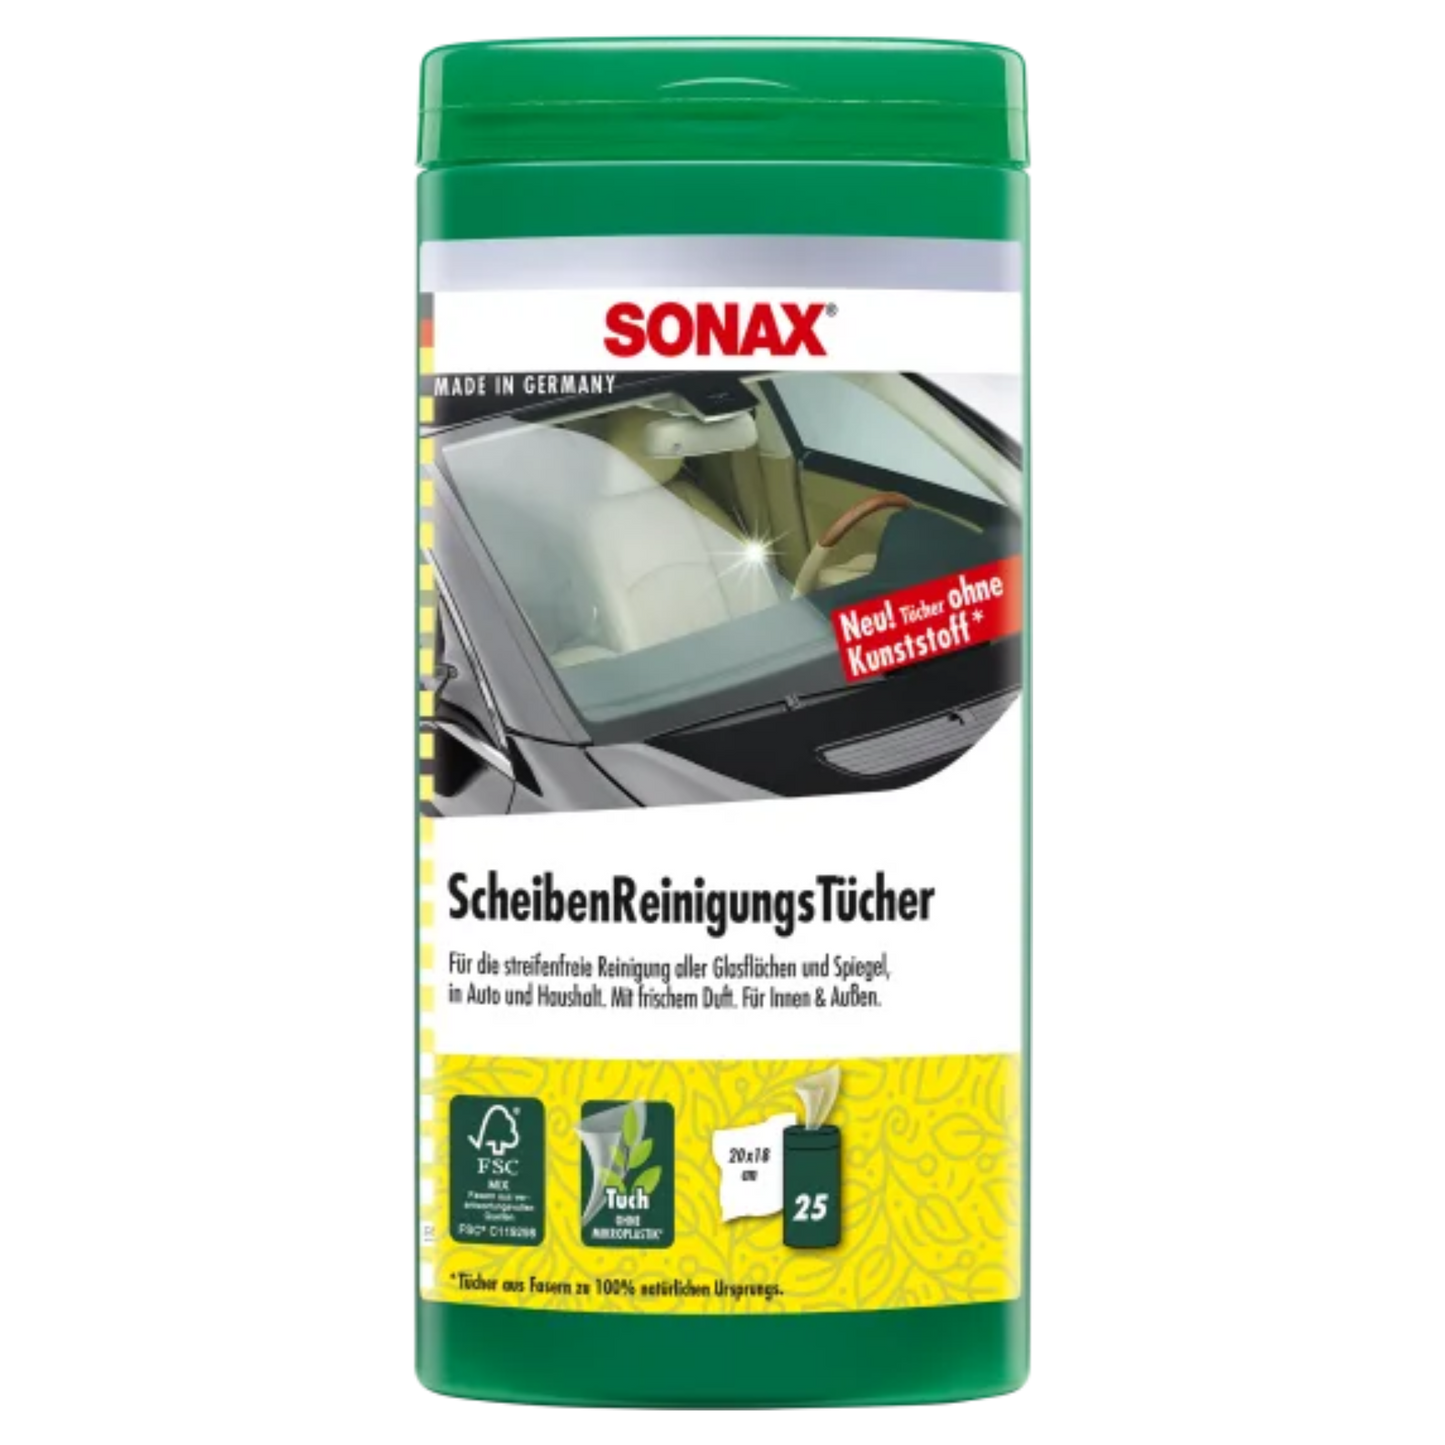 SONAX Scheiben-Reinigungstücher Box